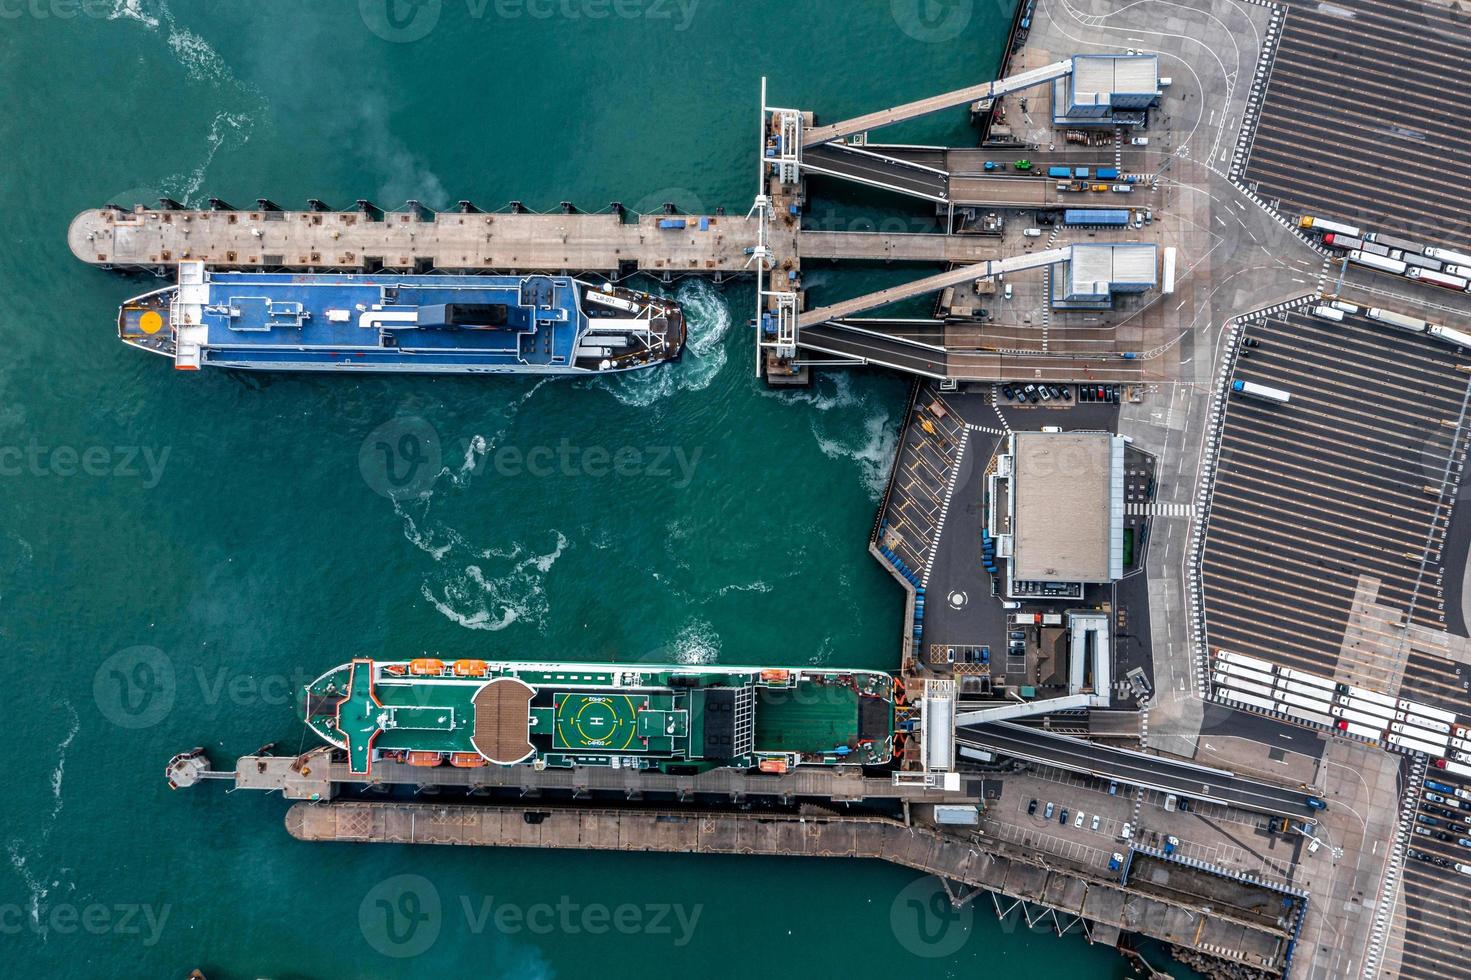 vue aérienne du port de douvres avec de nombreux ferries photo